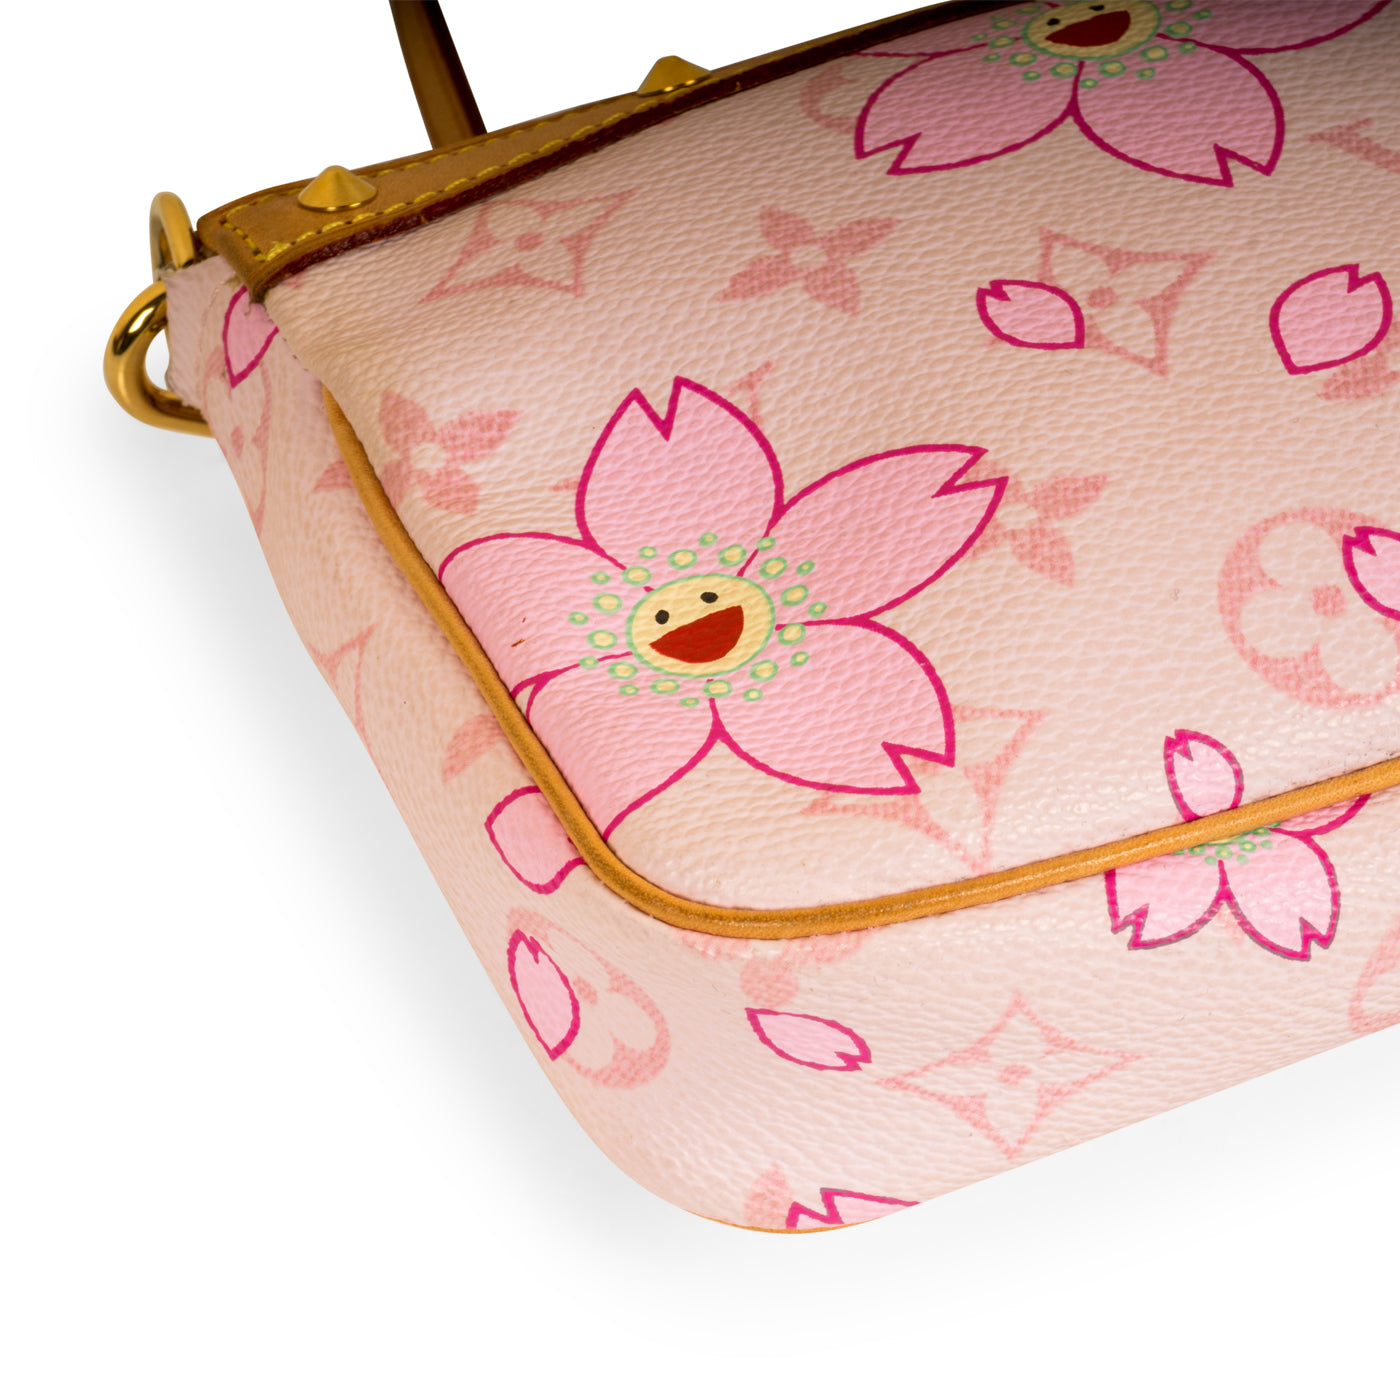 FWRD Renew Louis Vuitton Monogram Cherry Blossom Pochette Accessories Bag  in Multicolor